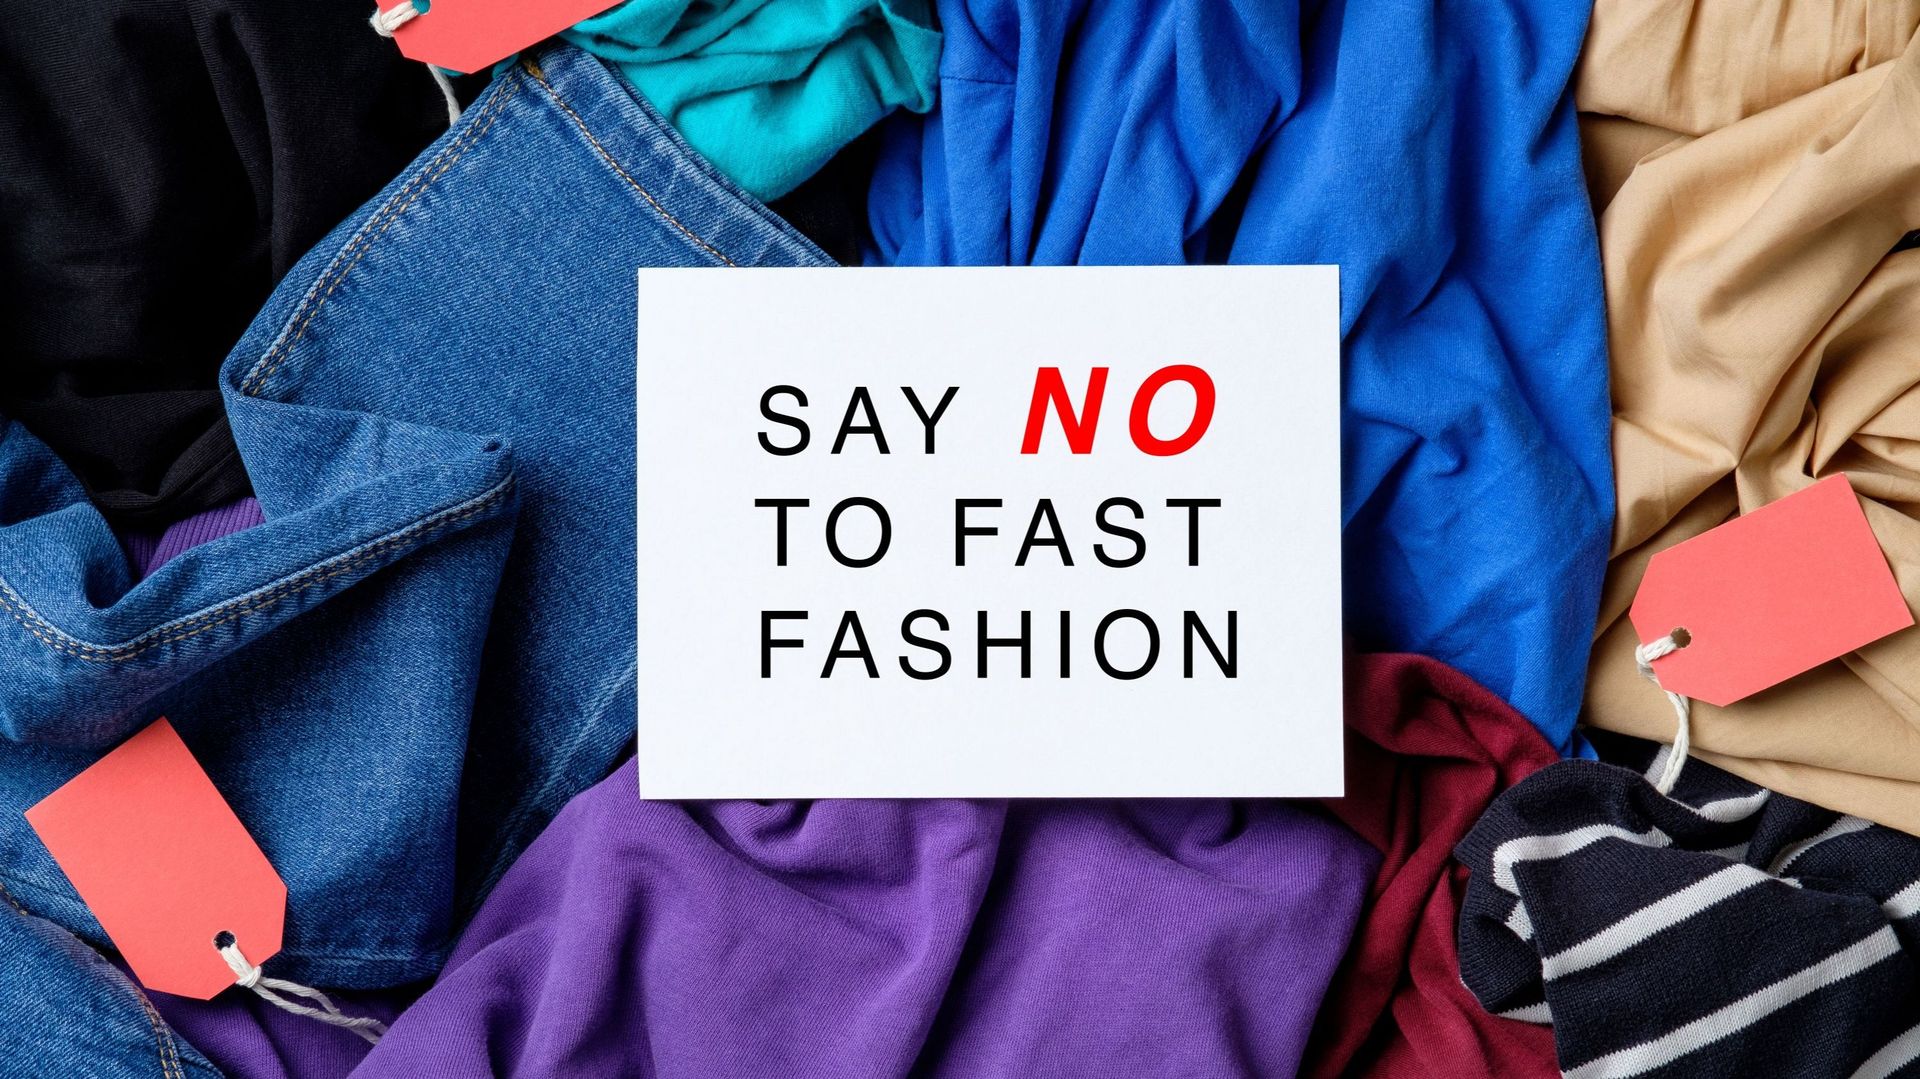 Panneau "Dites non à la fast fashion".